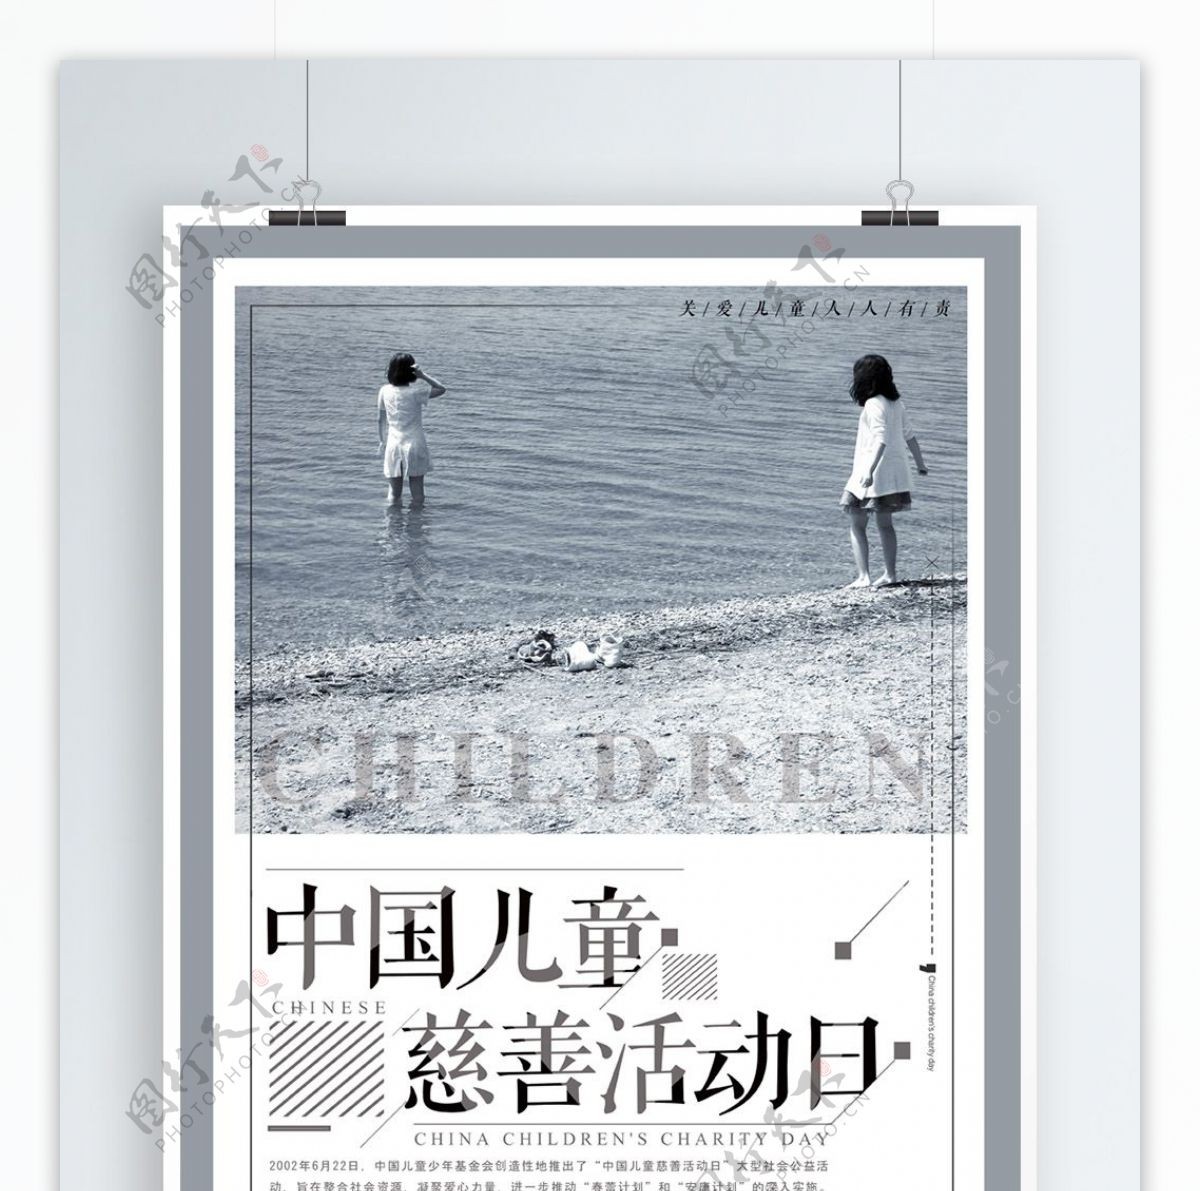 简约中国儿童慈善活动日海报设计